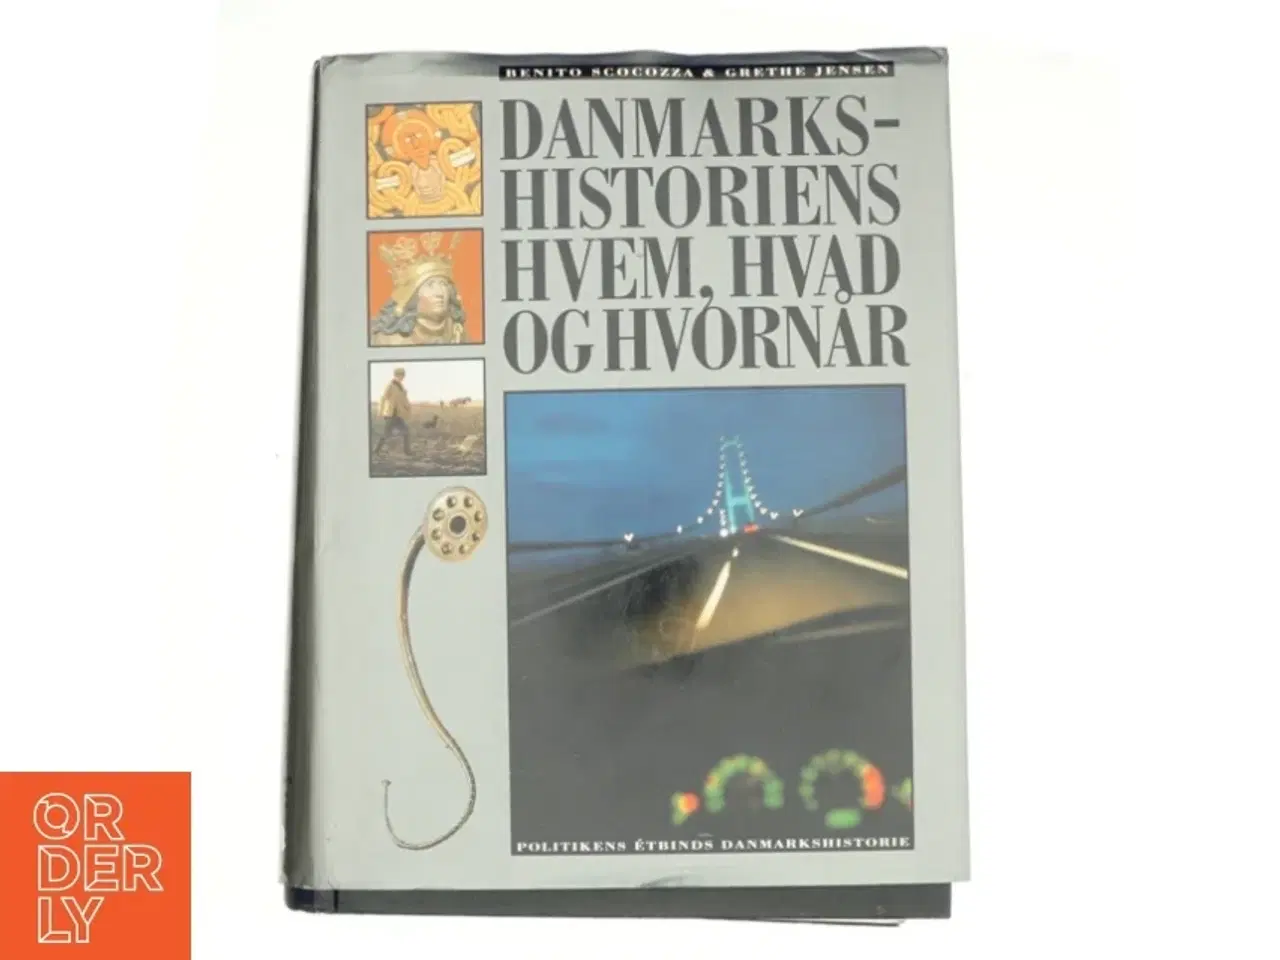 Billede 1 - Danmarkshistoriens hvem, hvad og hvornår : Politikens étbinds Danmarkshistorie (Bog)